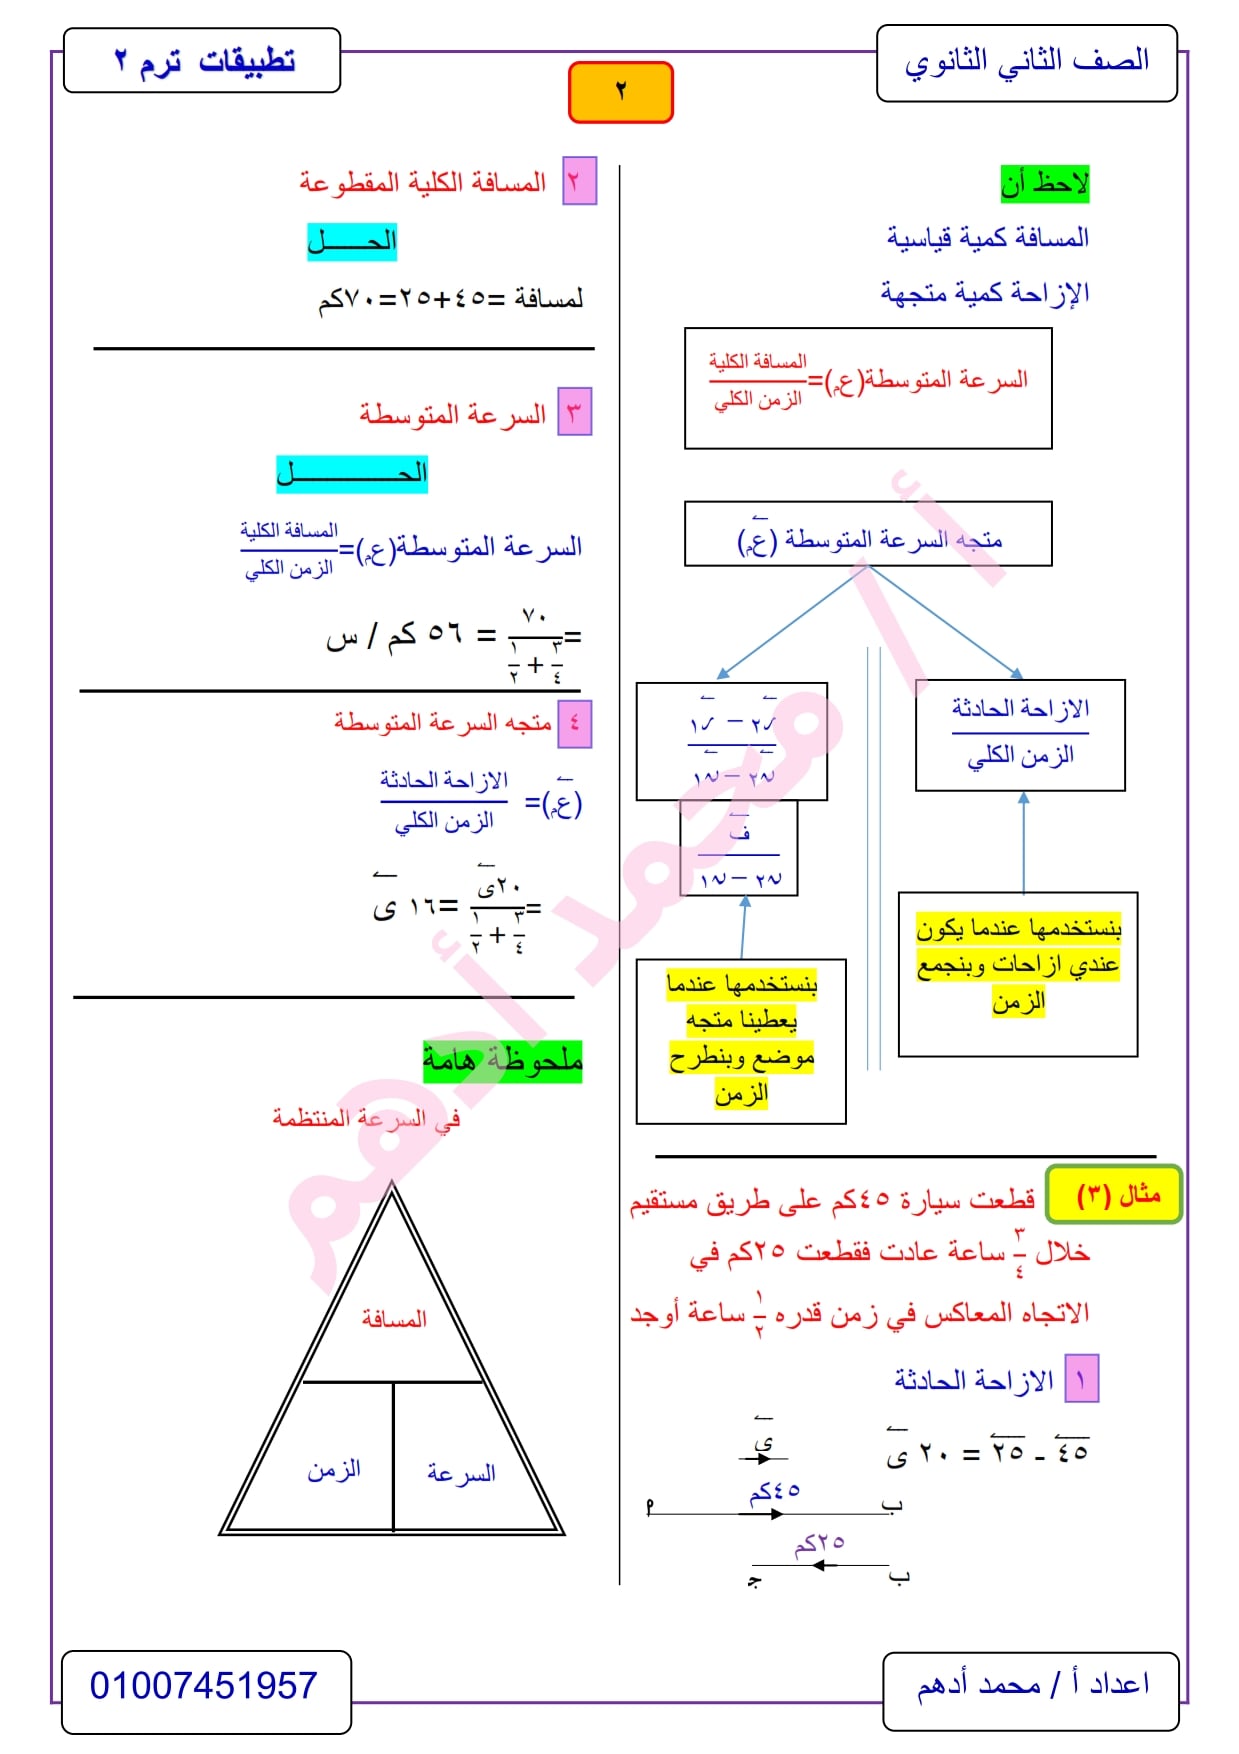 مراجعة تطبيقات الرياضيات 2 ثانوي الترم الثاني .. ديناميكا أ/ محمد أدهم 2